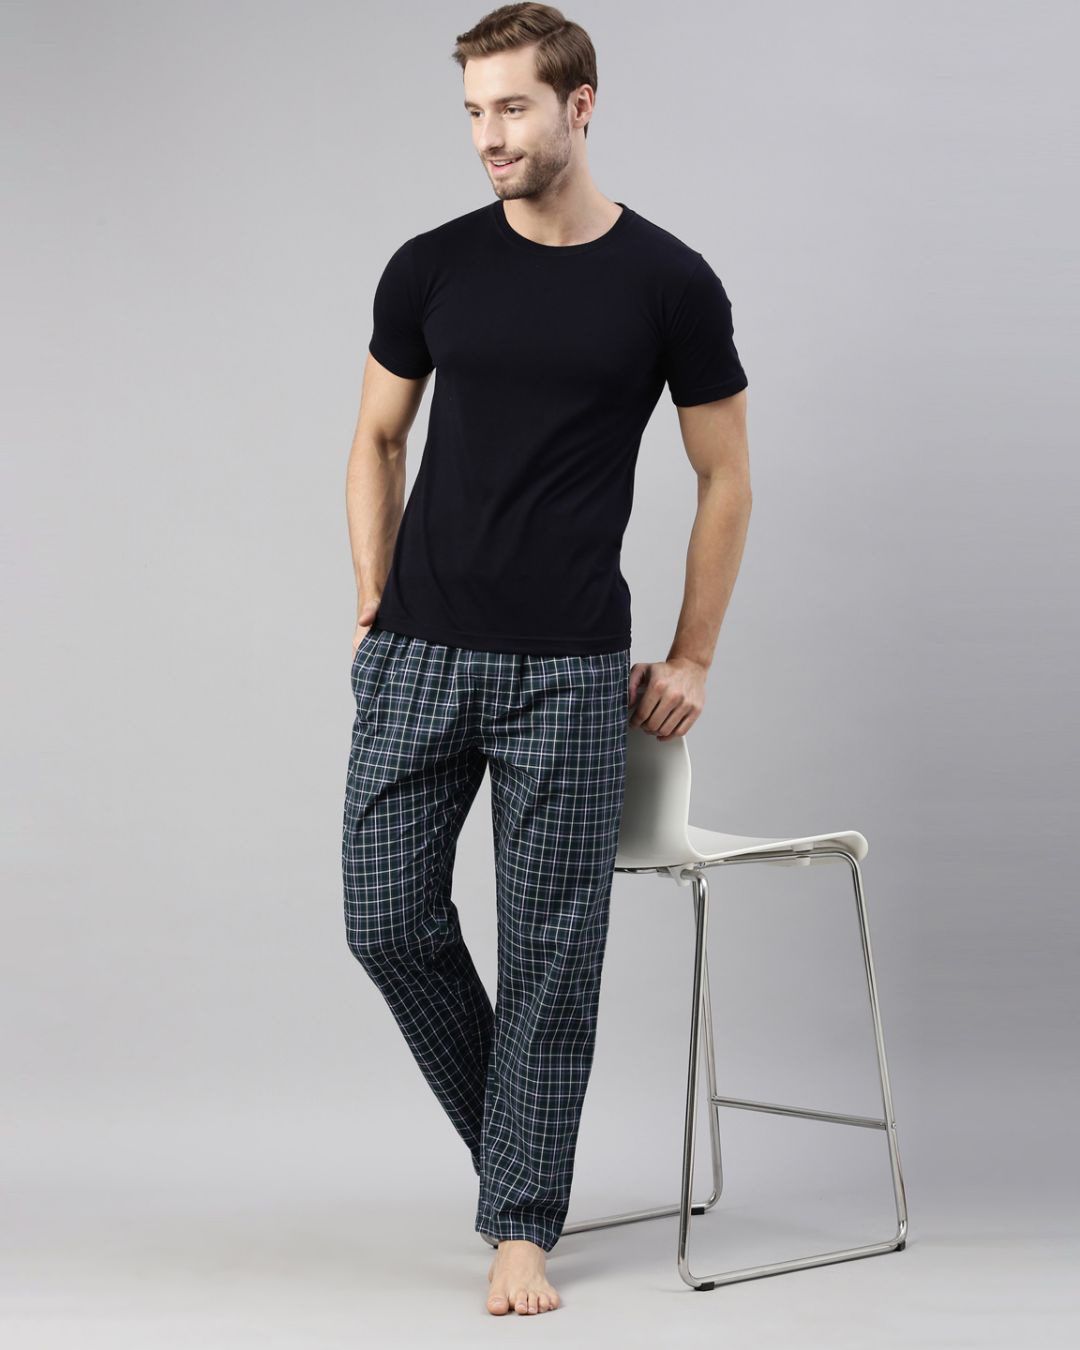 Buy Men's Green Checked Cotton Pyjamas Online in India at Bewakoof